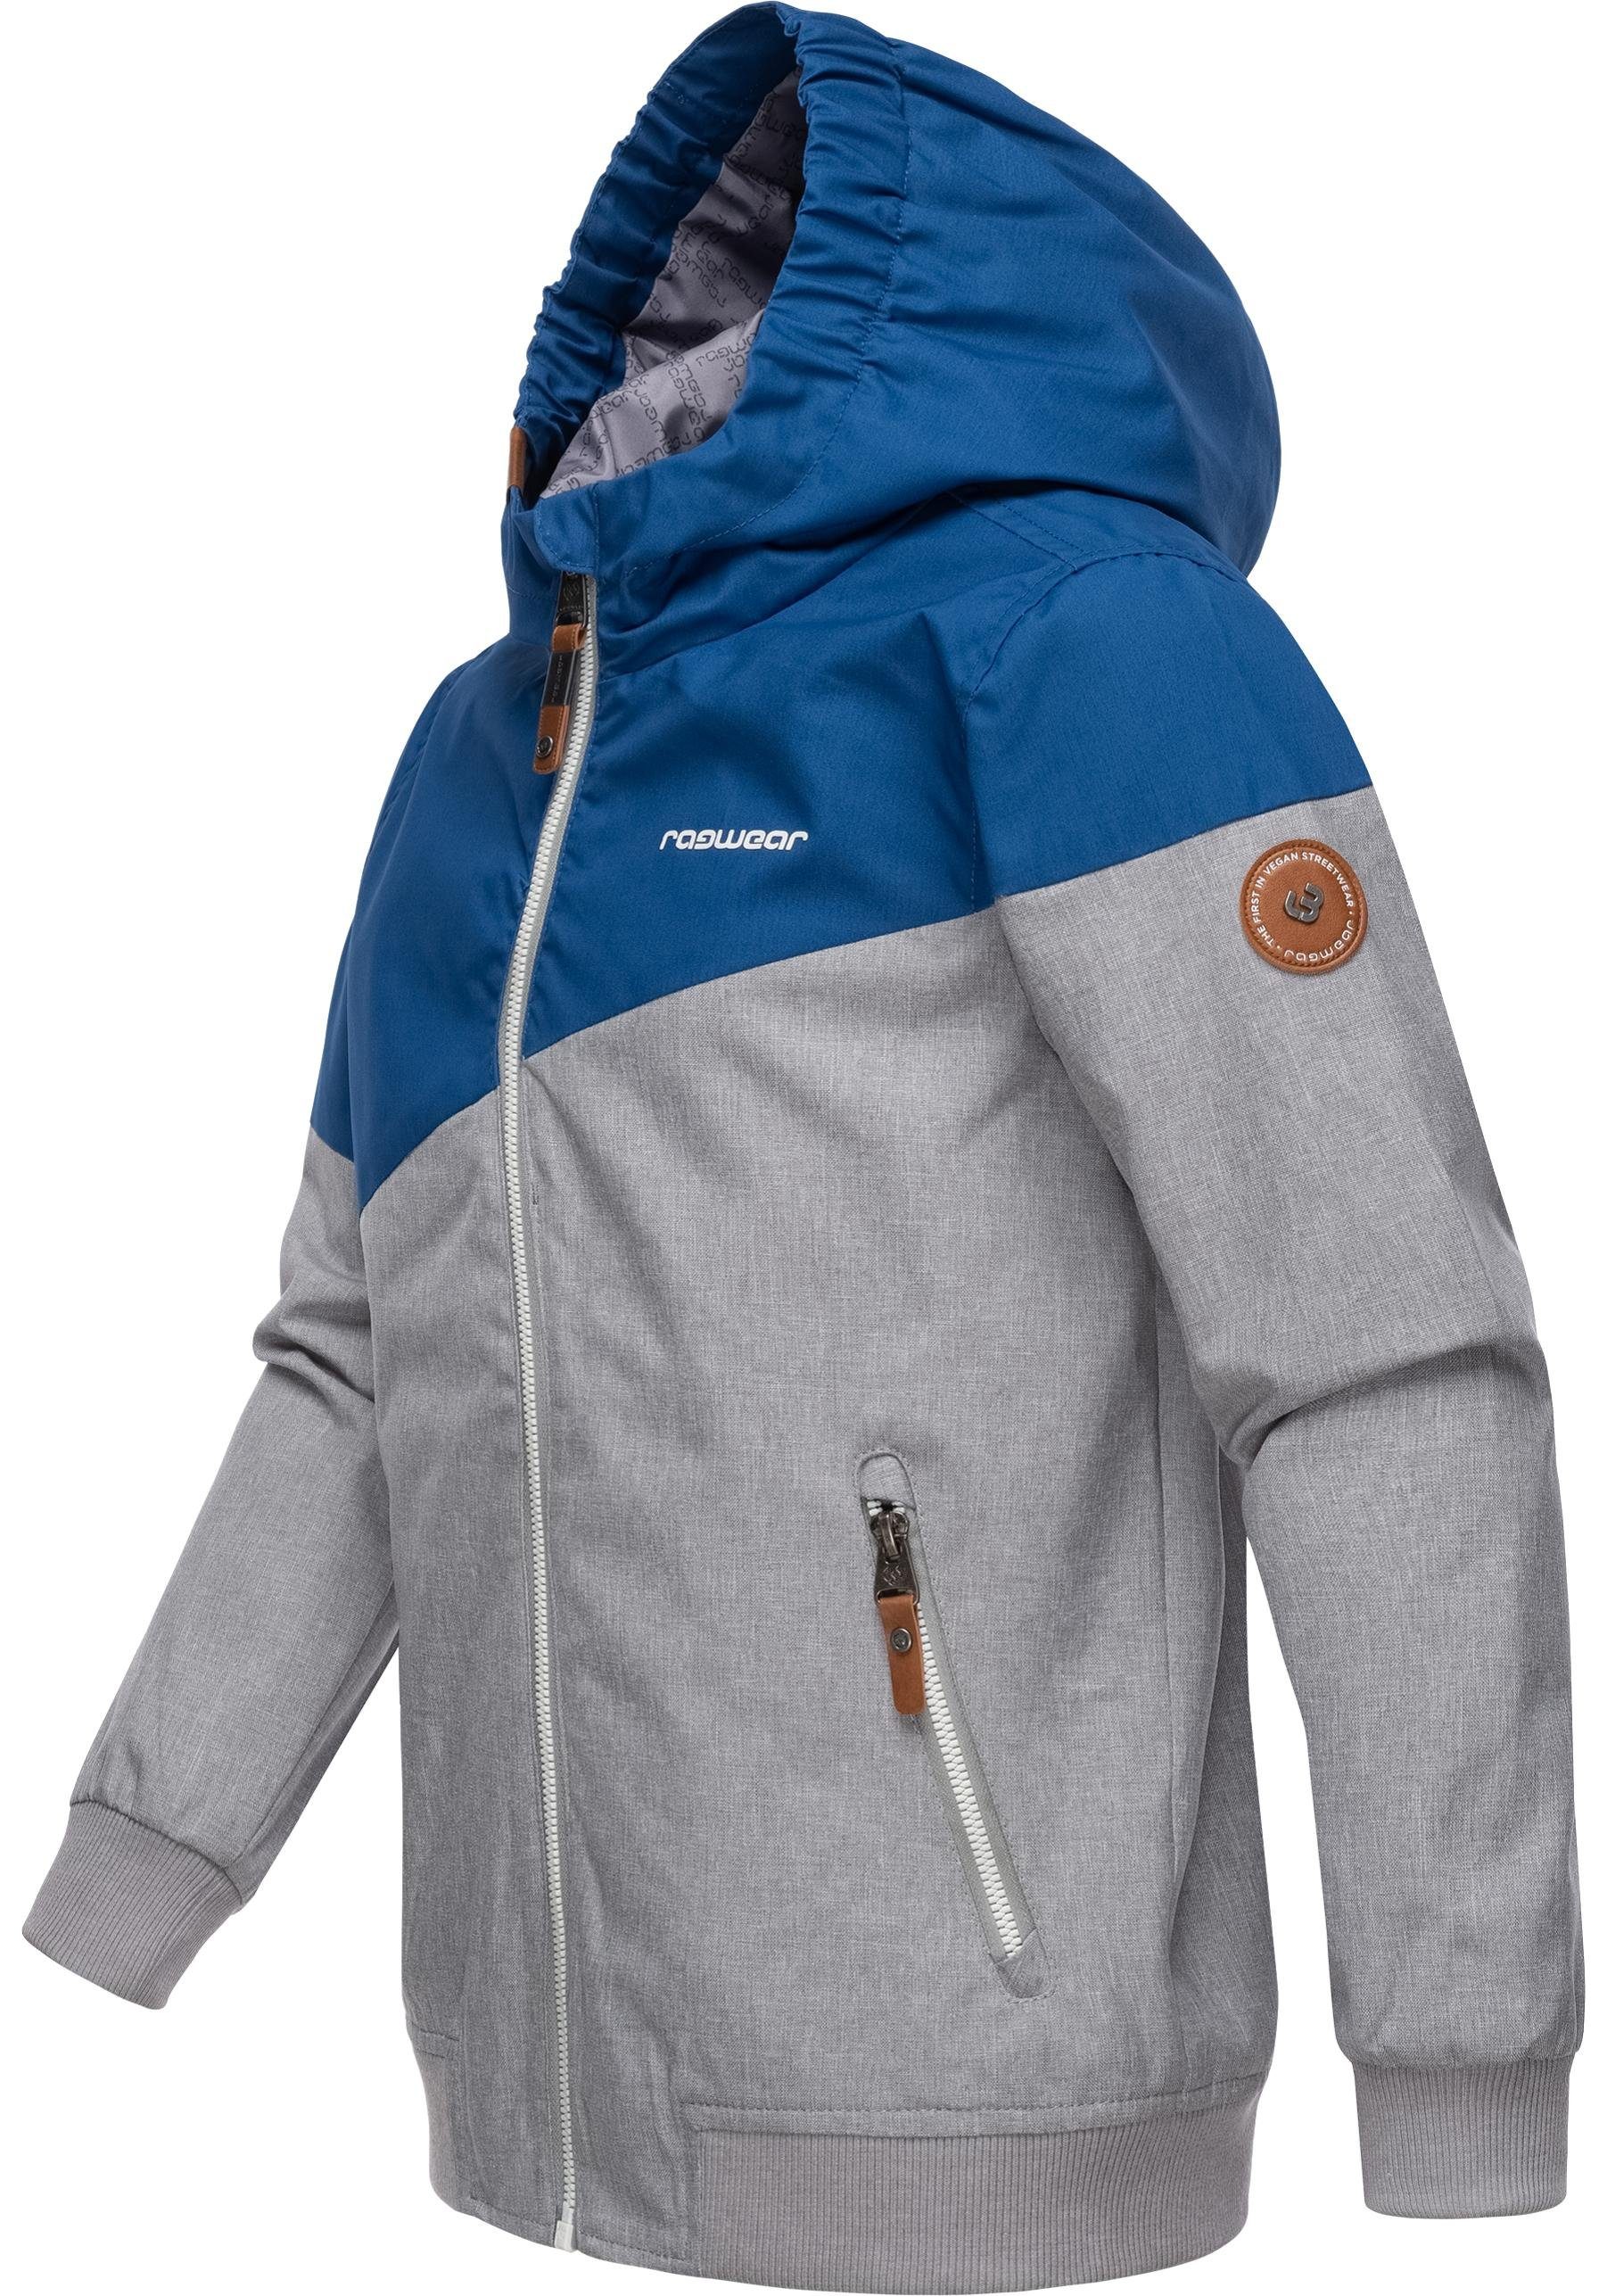 Jowell Outdoorjacke Ragwear mit Kapuze Jungen II Jacke blau sportliche